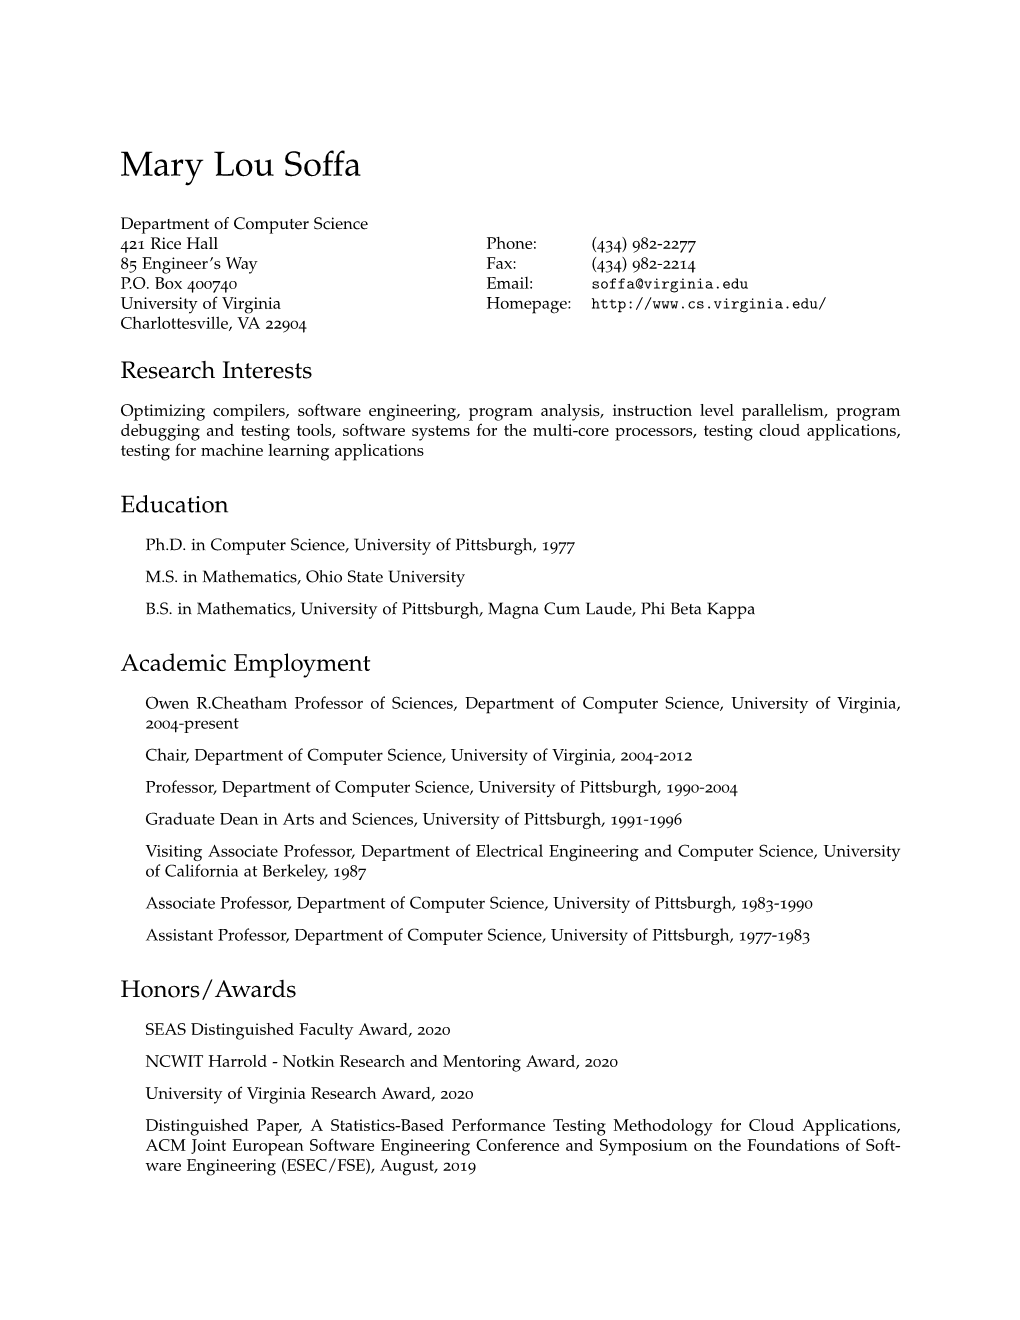 Mary Lou Soffa: Curriculum Vitae